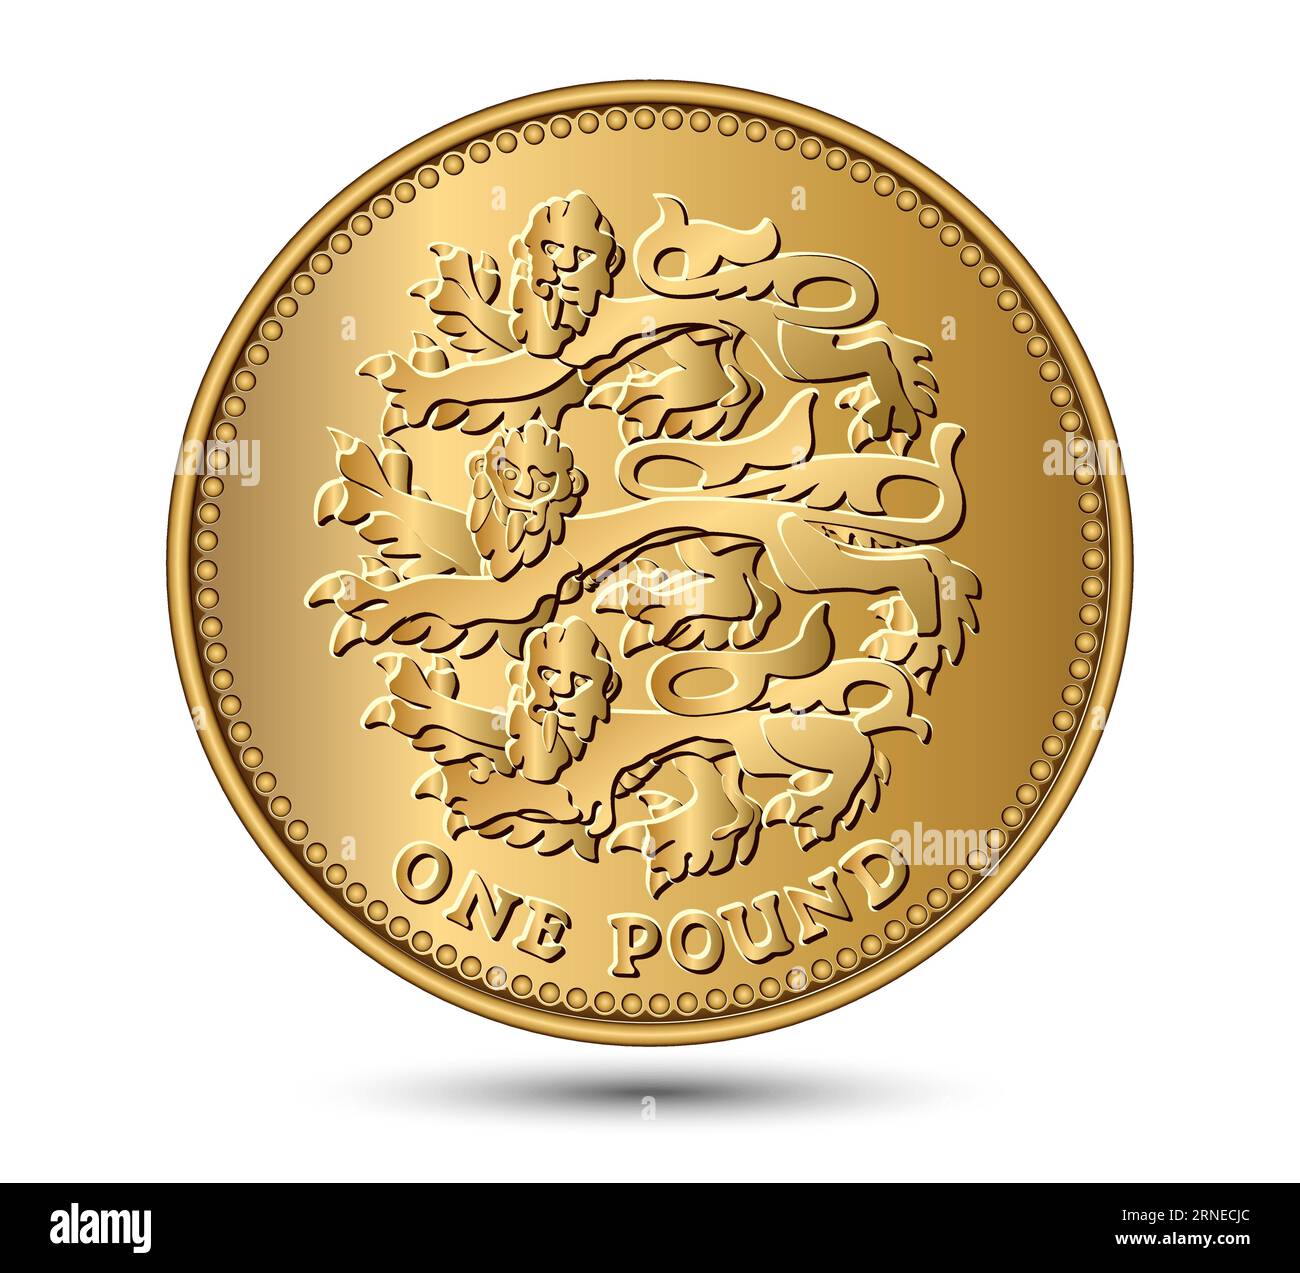 Moneta britannica da una sterlina con tre leoni. Illustrazione vettoriale. Illustrazione Vettoriale